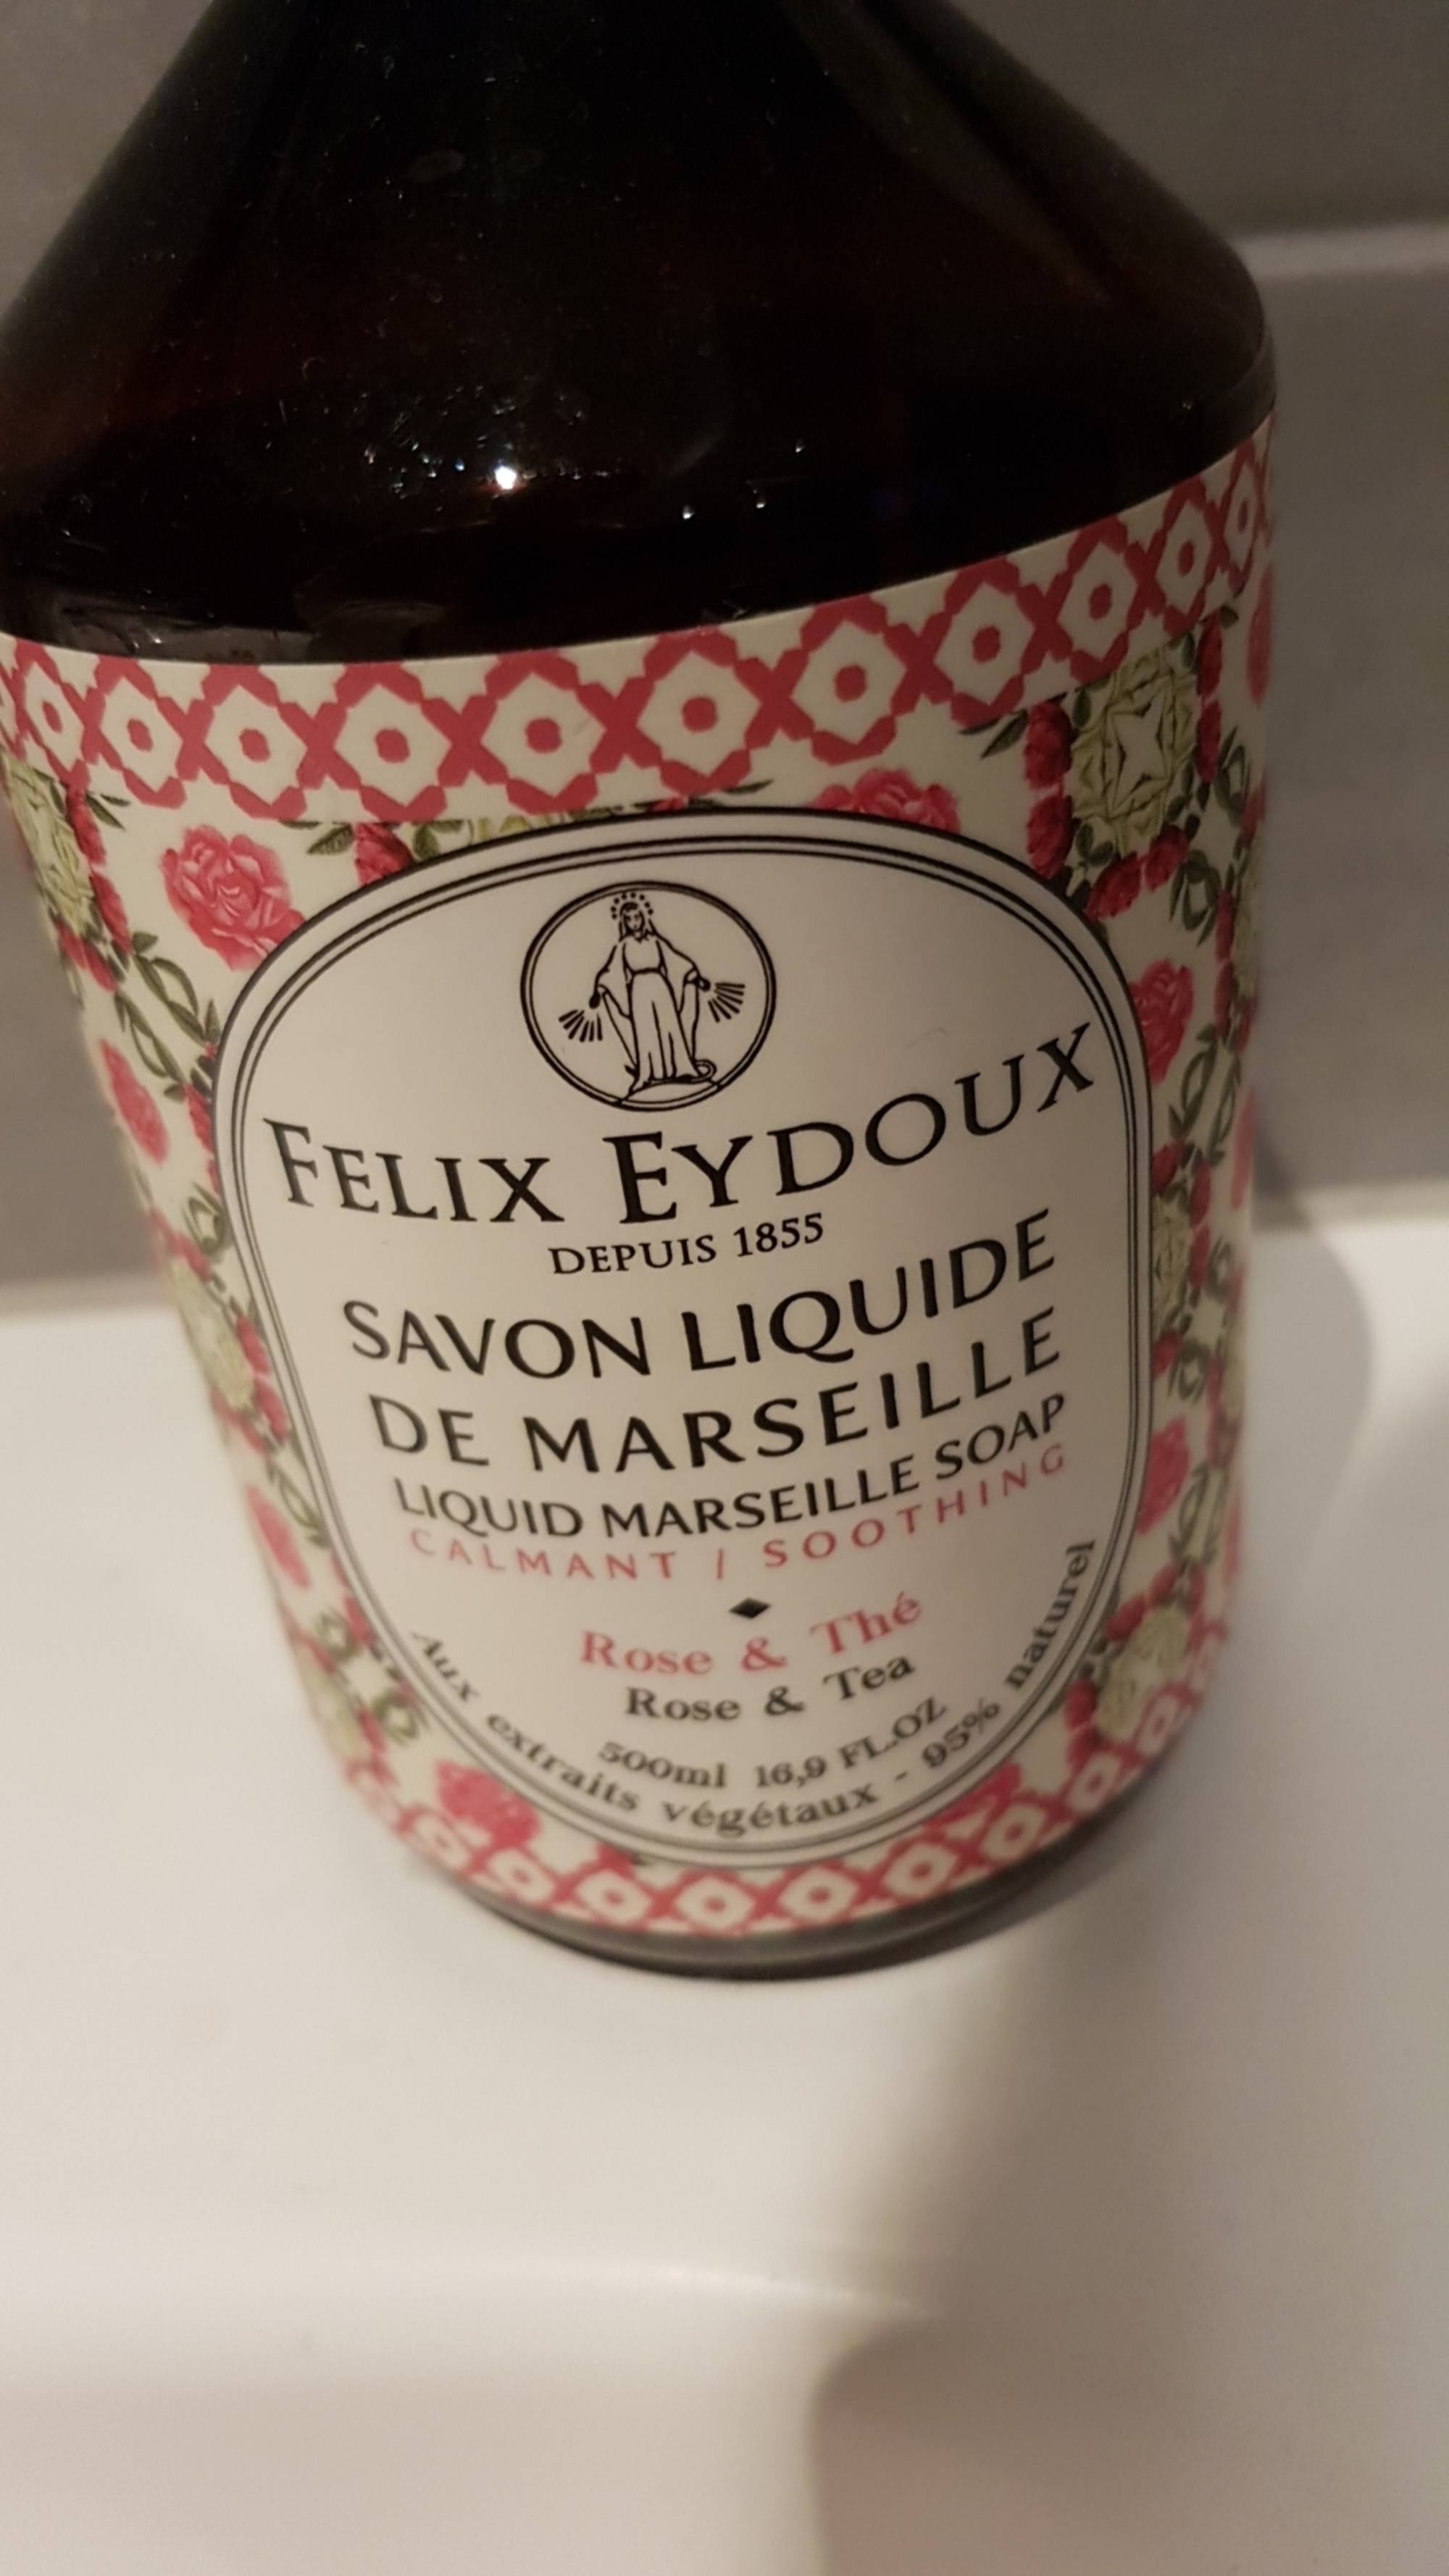 FELIX EYDOUX - Rose & thé - Savon liquide de Marseille calmant